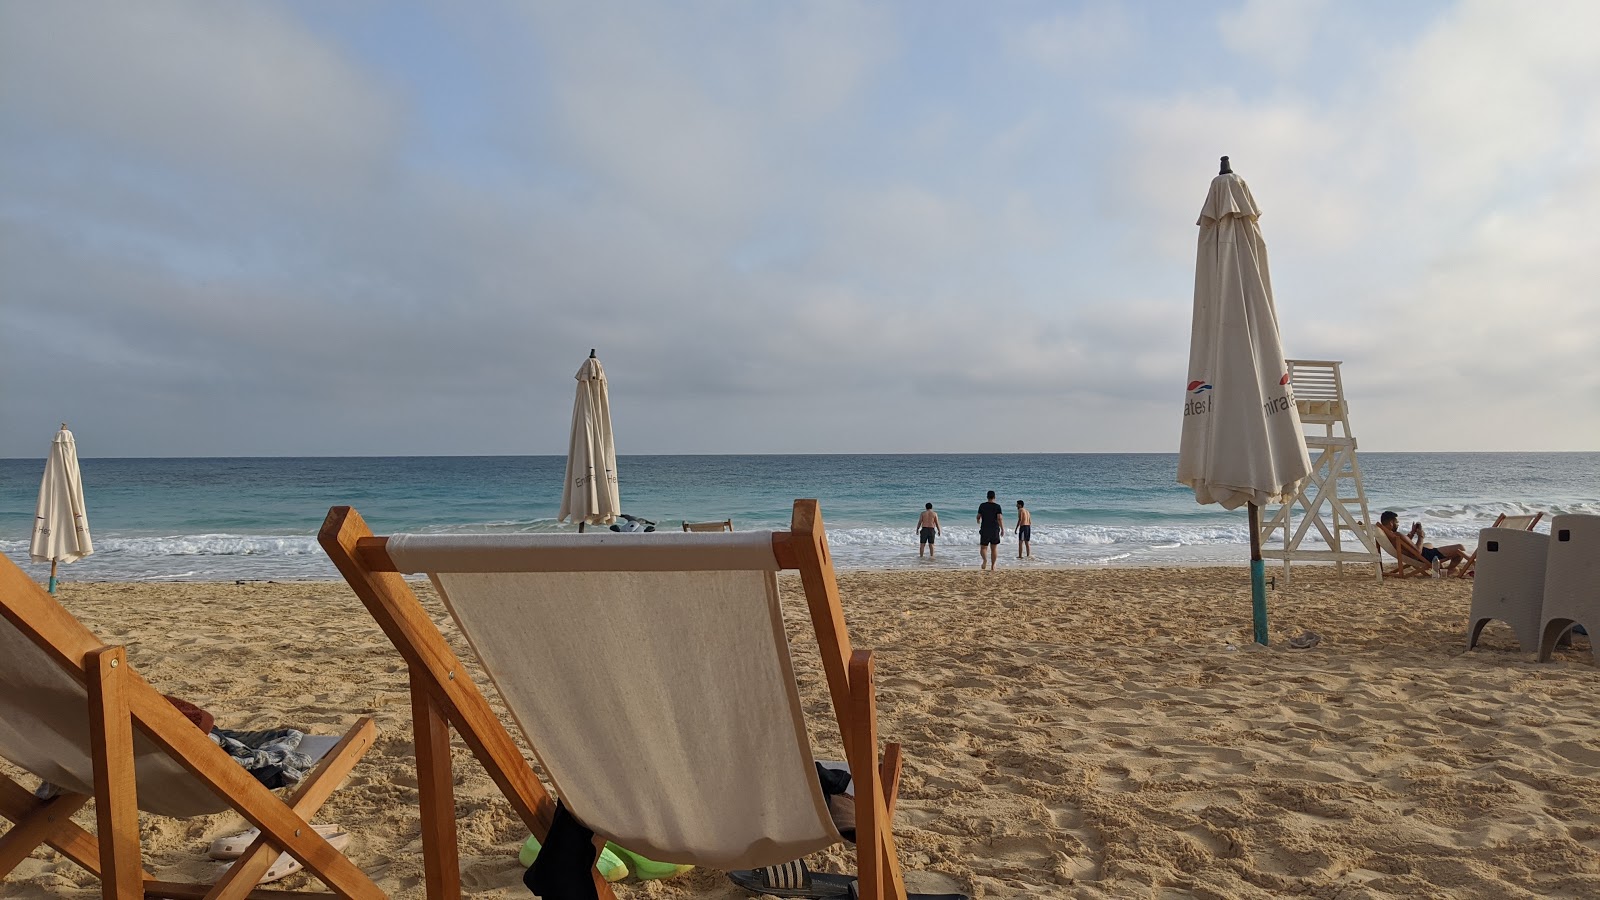 Emirates Heights Beach'in fotoğrafı - rahatlamayı sevenler arasında popüler bir yer